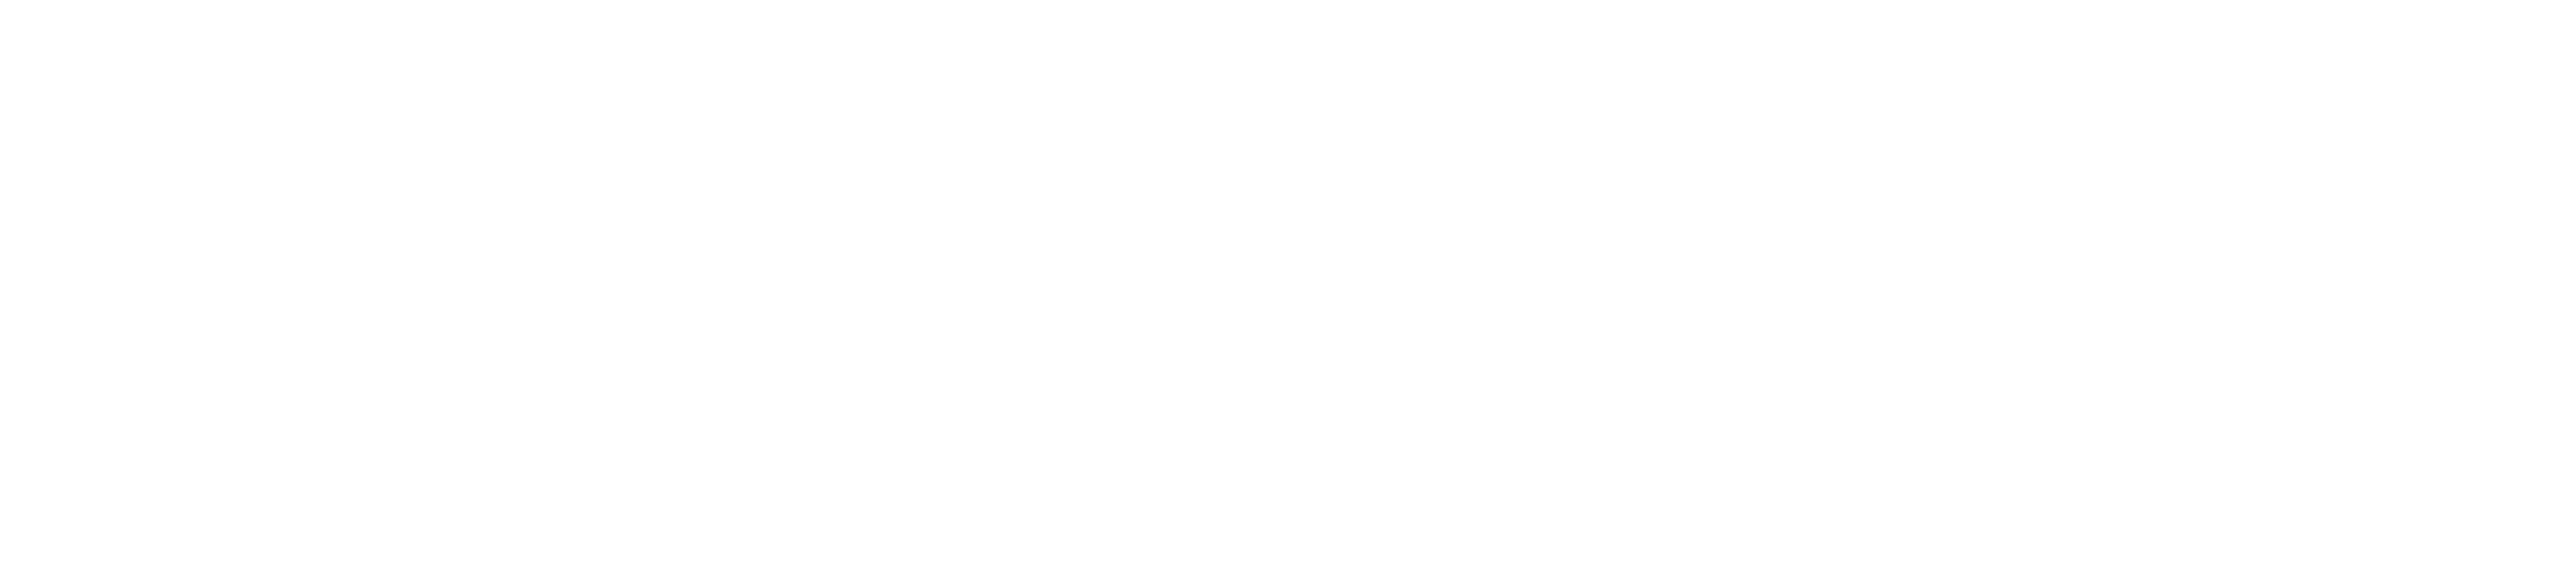 Koczka Desing logo